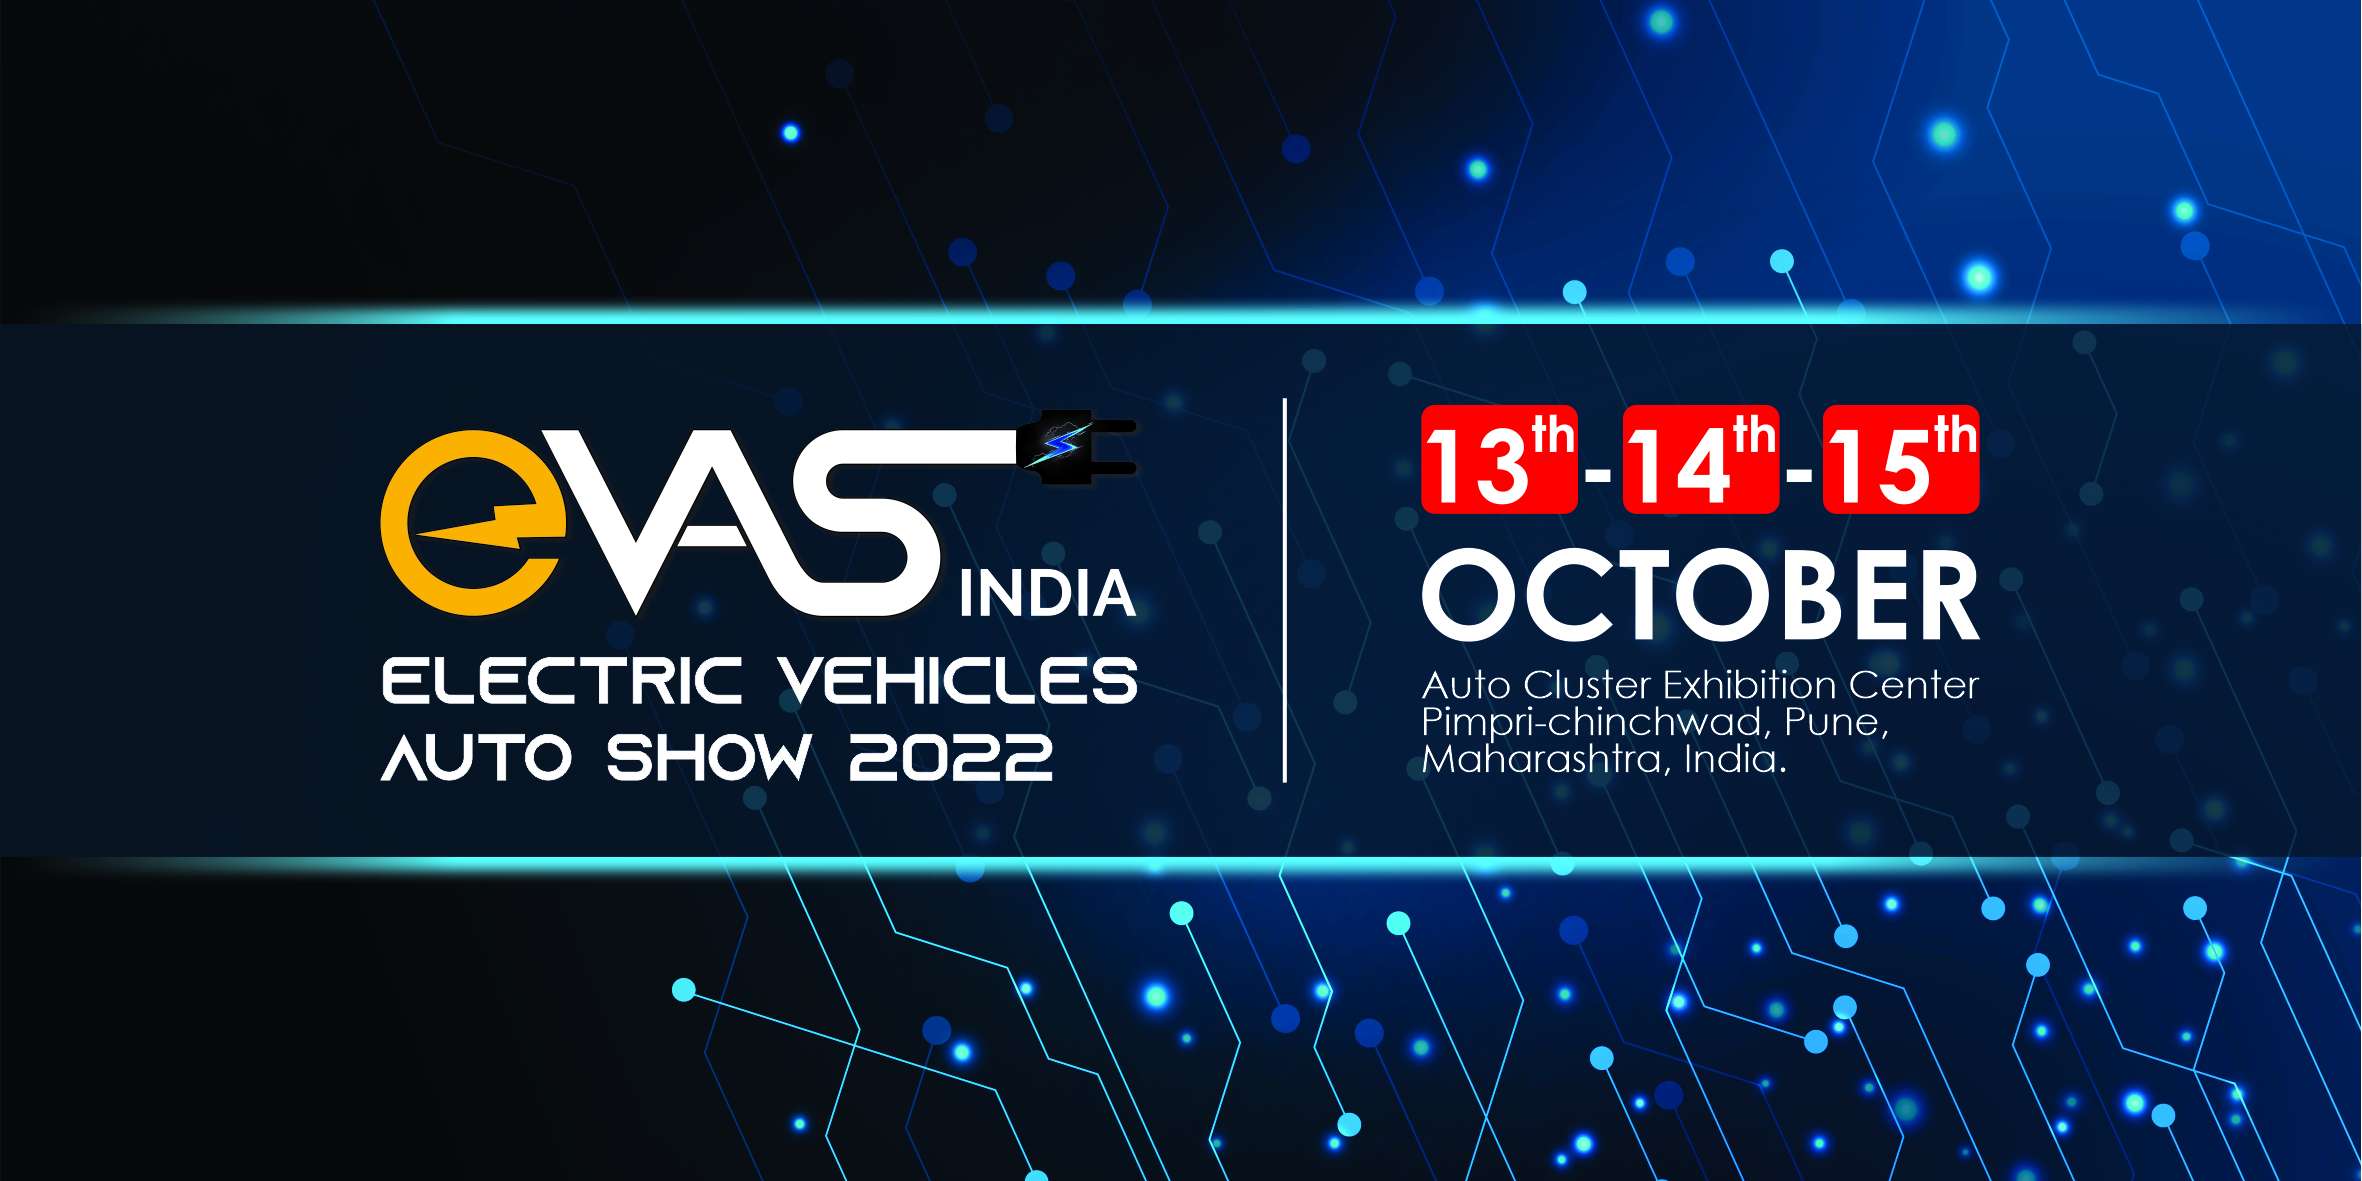 EVAS INDIA Electric Vehicles Auto Show 2022